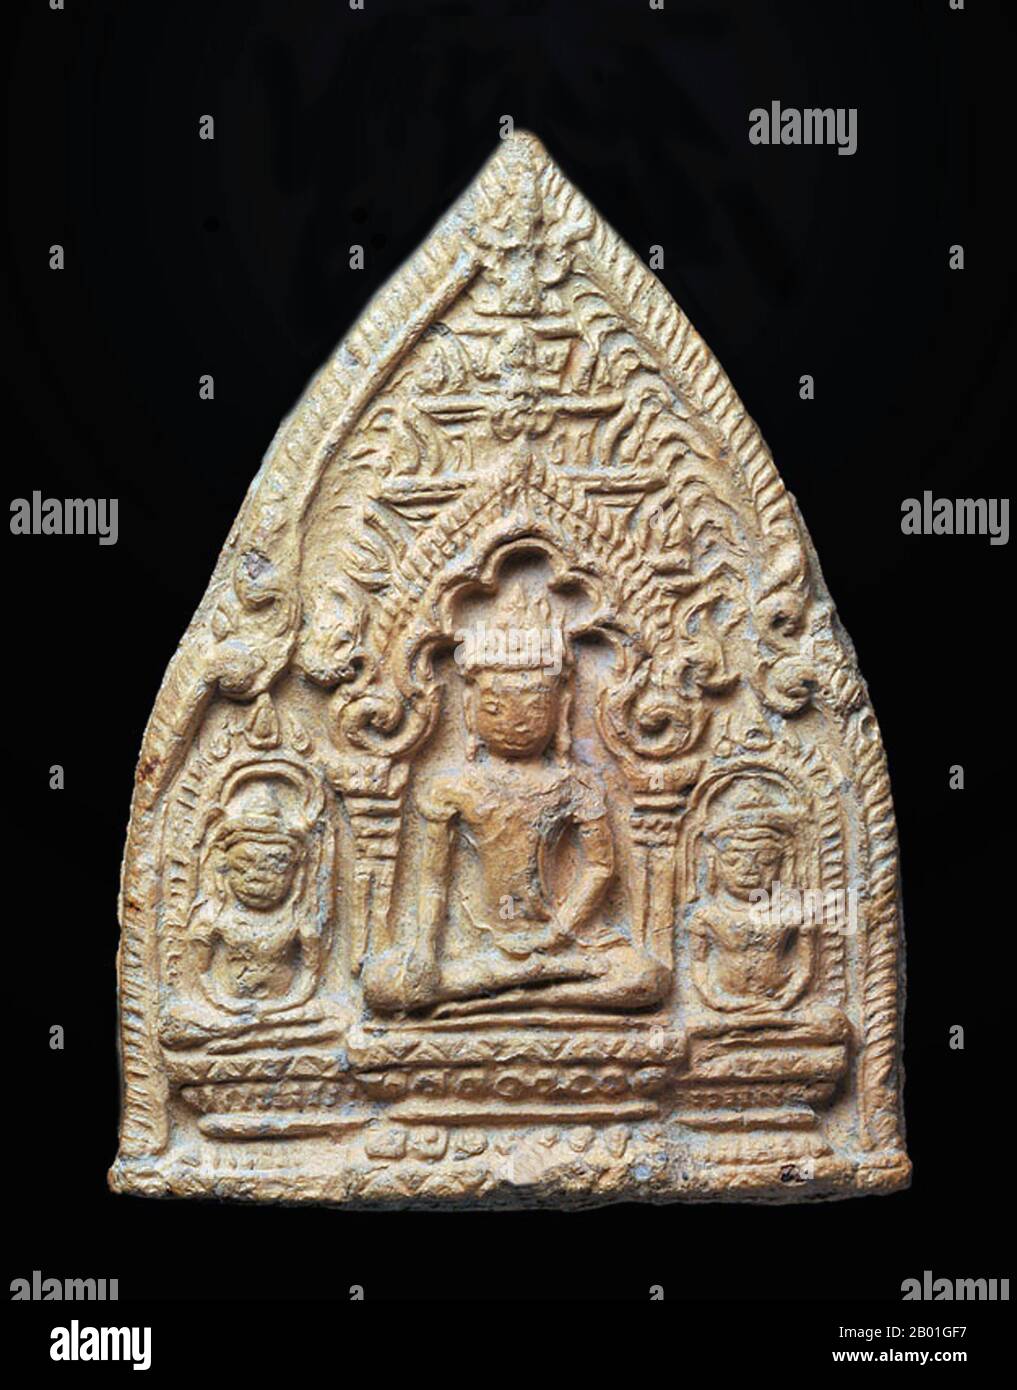 Thailand: Terracotta Buddha Amulet oder 'Phra Pim', Wiang Tha Kan, Provinz Chiang Mai, LAN Na-Zeitraum, 12.-14. Jahrhundert CE. Wiang Tha Khan, 16 km südlich von Chiang Mai im ländlichen Stadtteil Sanpatong, ist ein kleines und wohlhabendes nordthailändisches Dorf inmitten von Lamyai-Plantagen und bewohnt von Tai Yong, das zu Beginn des 19. Jahrhunderts vom nahe gelegenen Shan-Staat in Burma neu angesiedelt wurde. Schon im 10. Jahrhundert war es eine befestigte Stadt oder „wiang“, die als Bastion des Mon-Königreichs Haripunchai, des heutigen Lamphun, diente. Stockfoto